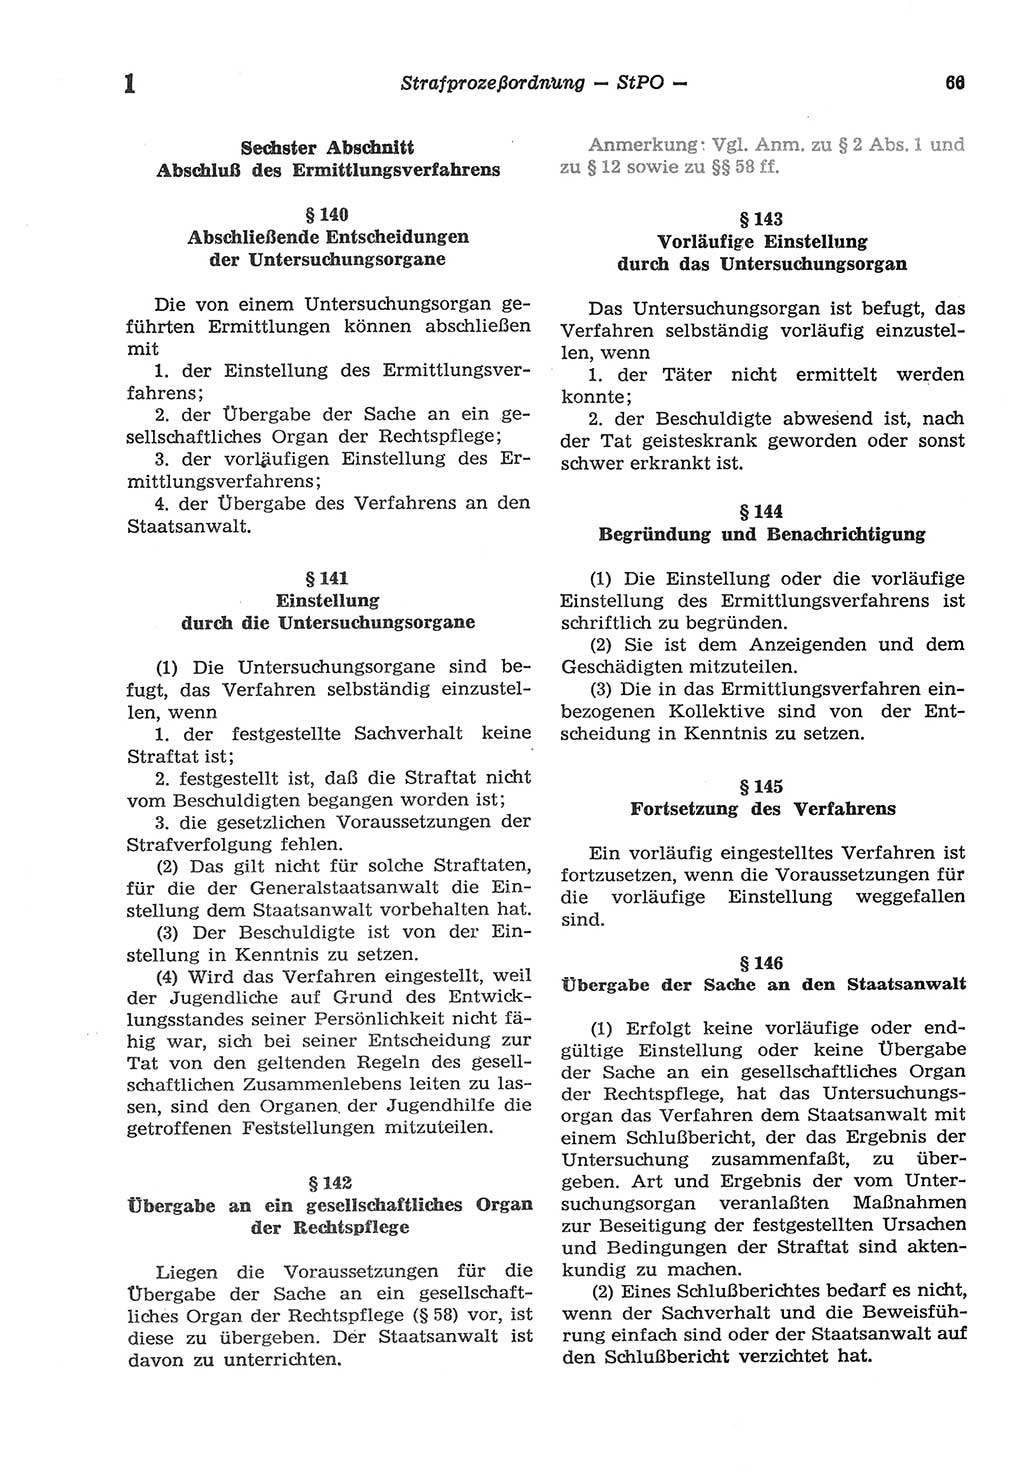 Strafprozeßordnung (StPO) der Deutschen Demokratischen Republik (DDR) sowie angrenzende Gesetze und Bestimmungen 1977, Seite 66 (StPO DDR Ges. Best. 1977, S. 66)